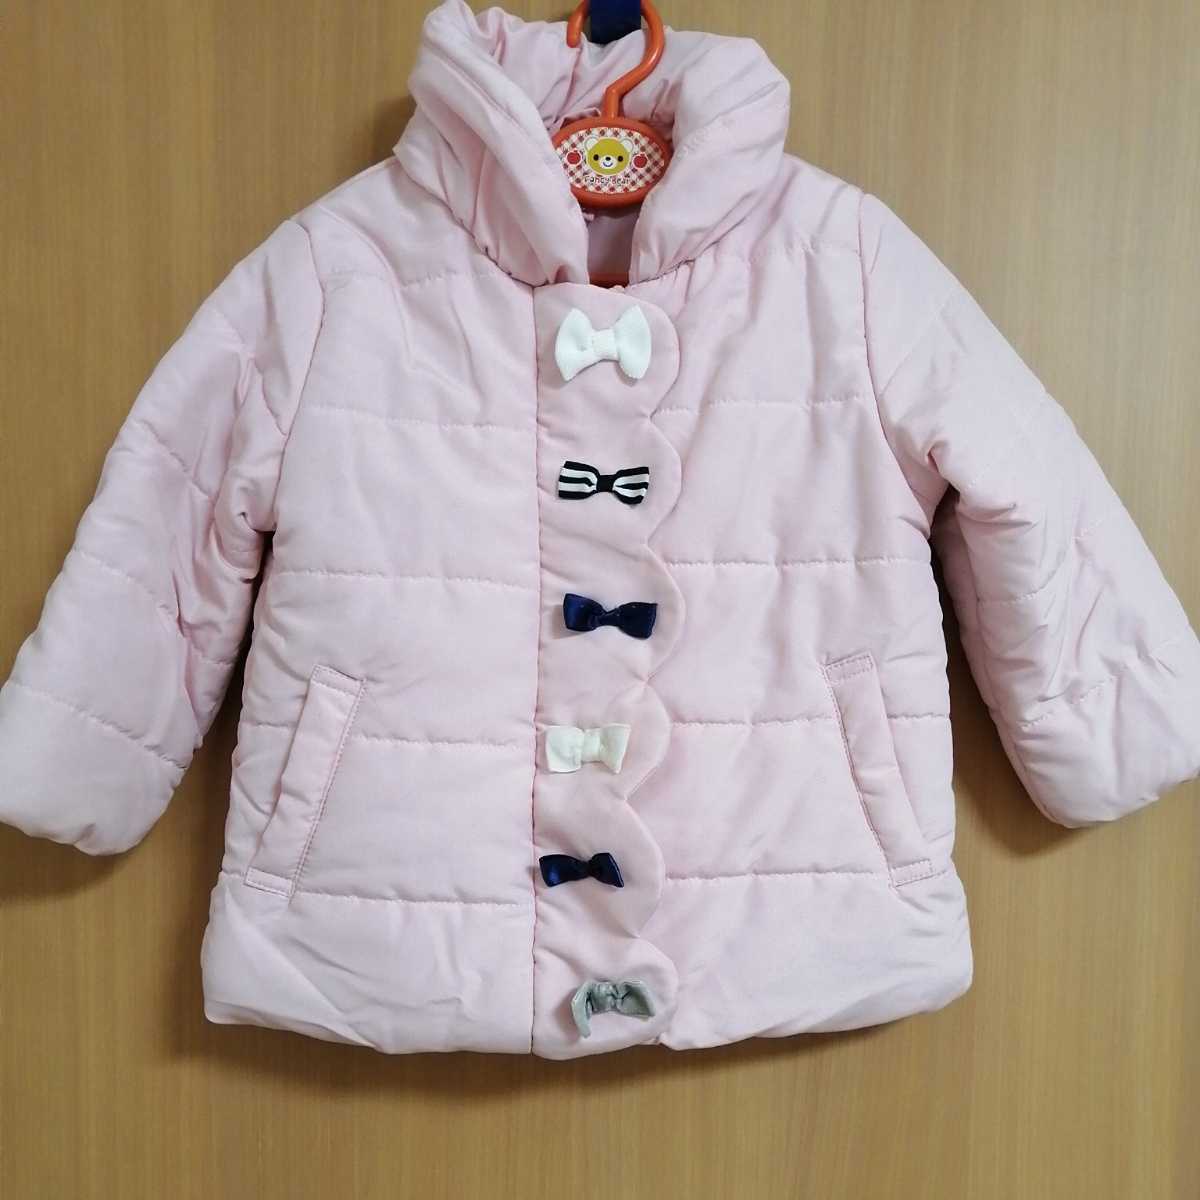 * пальто пуховик пуховик лента девочка ребенок одежда Kids ребенок baby симпатичный розовый 